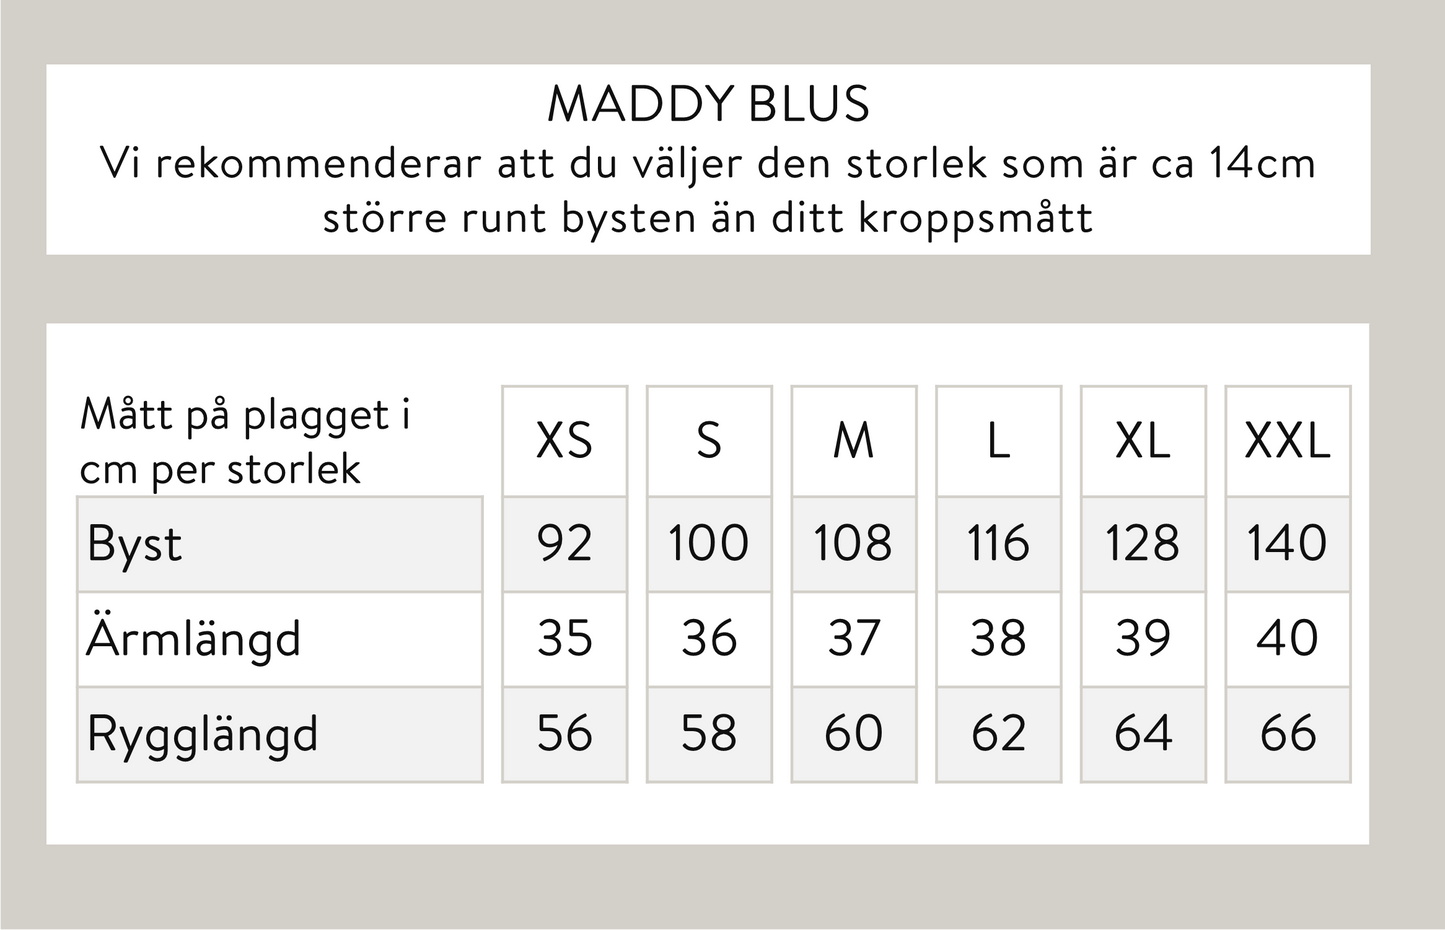 Maddy blus - Blå